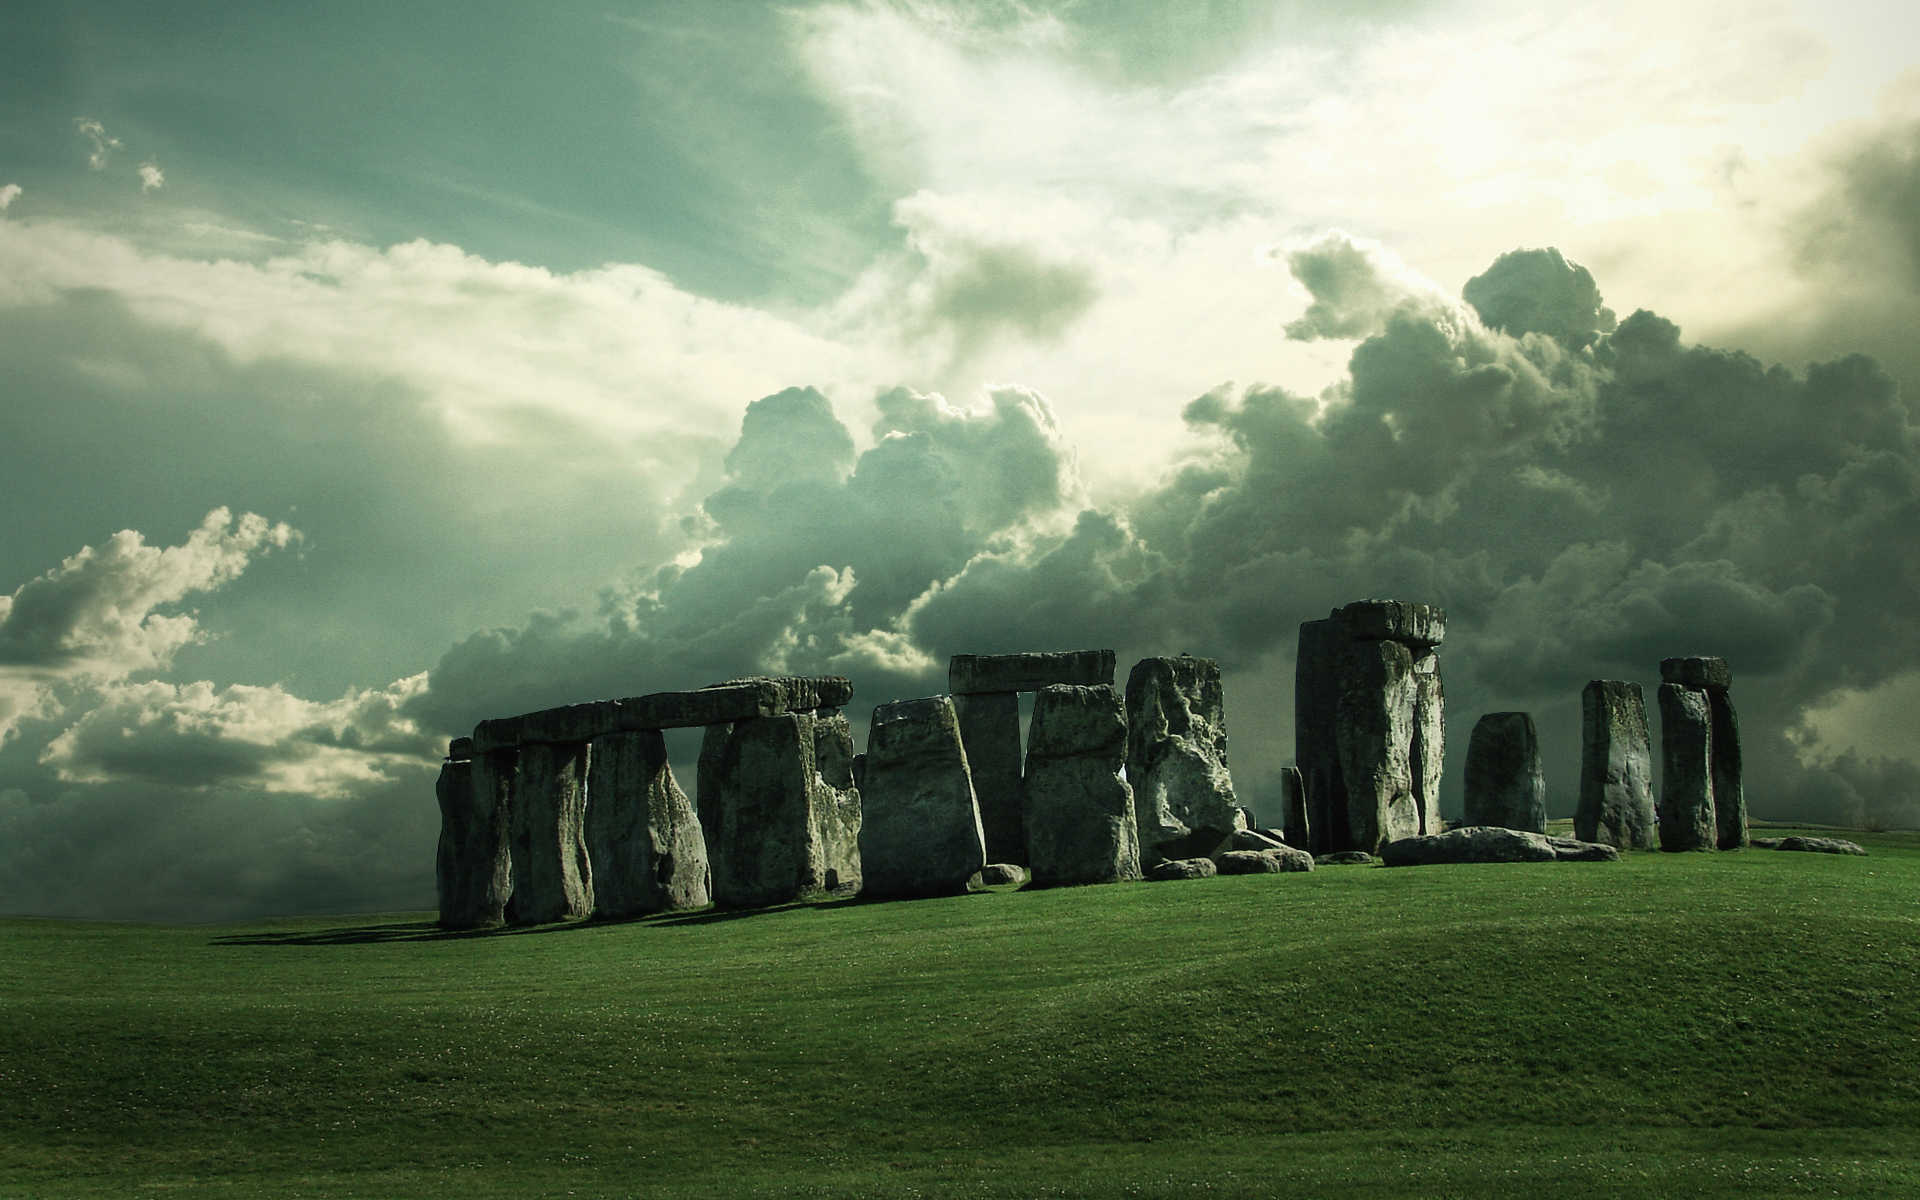 Stonehenge England